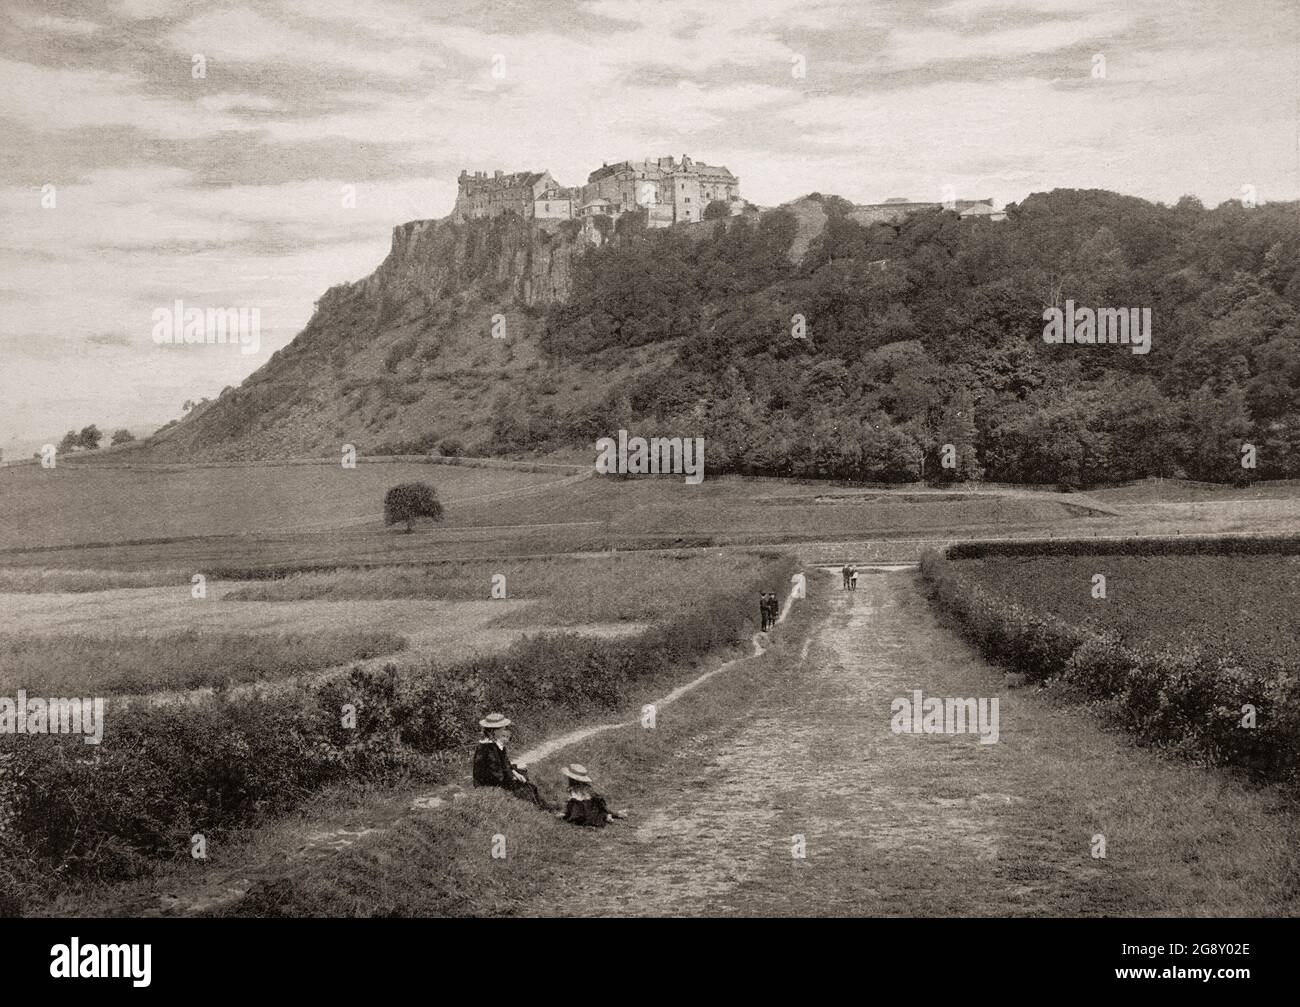 Eine Ansicht des Stirling Castle aus dem späten 19. Jahrhundert, eines der größten und bedeutendsten Schlösser Schottlands, sowohl historisch als auch architektonisch. Die Burg liegt auf dem Castle Hill, einem aufdringlichen Felsen, der an drei Seiten von steilen Klippen umgeben ist und eine starke defensive Position einnimmt. Die Burg stammt aus dem frühen 12. Jahrhundert, heute Gebäude meist zwischen 1490 und 1600 gebaut, während die äußeren Verteidigungsmauern vor der Stadt stammen aus dem frühen 18. Jahrhundert. Stockfoto